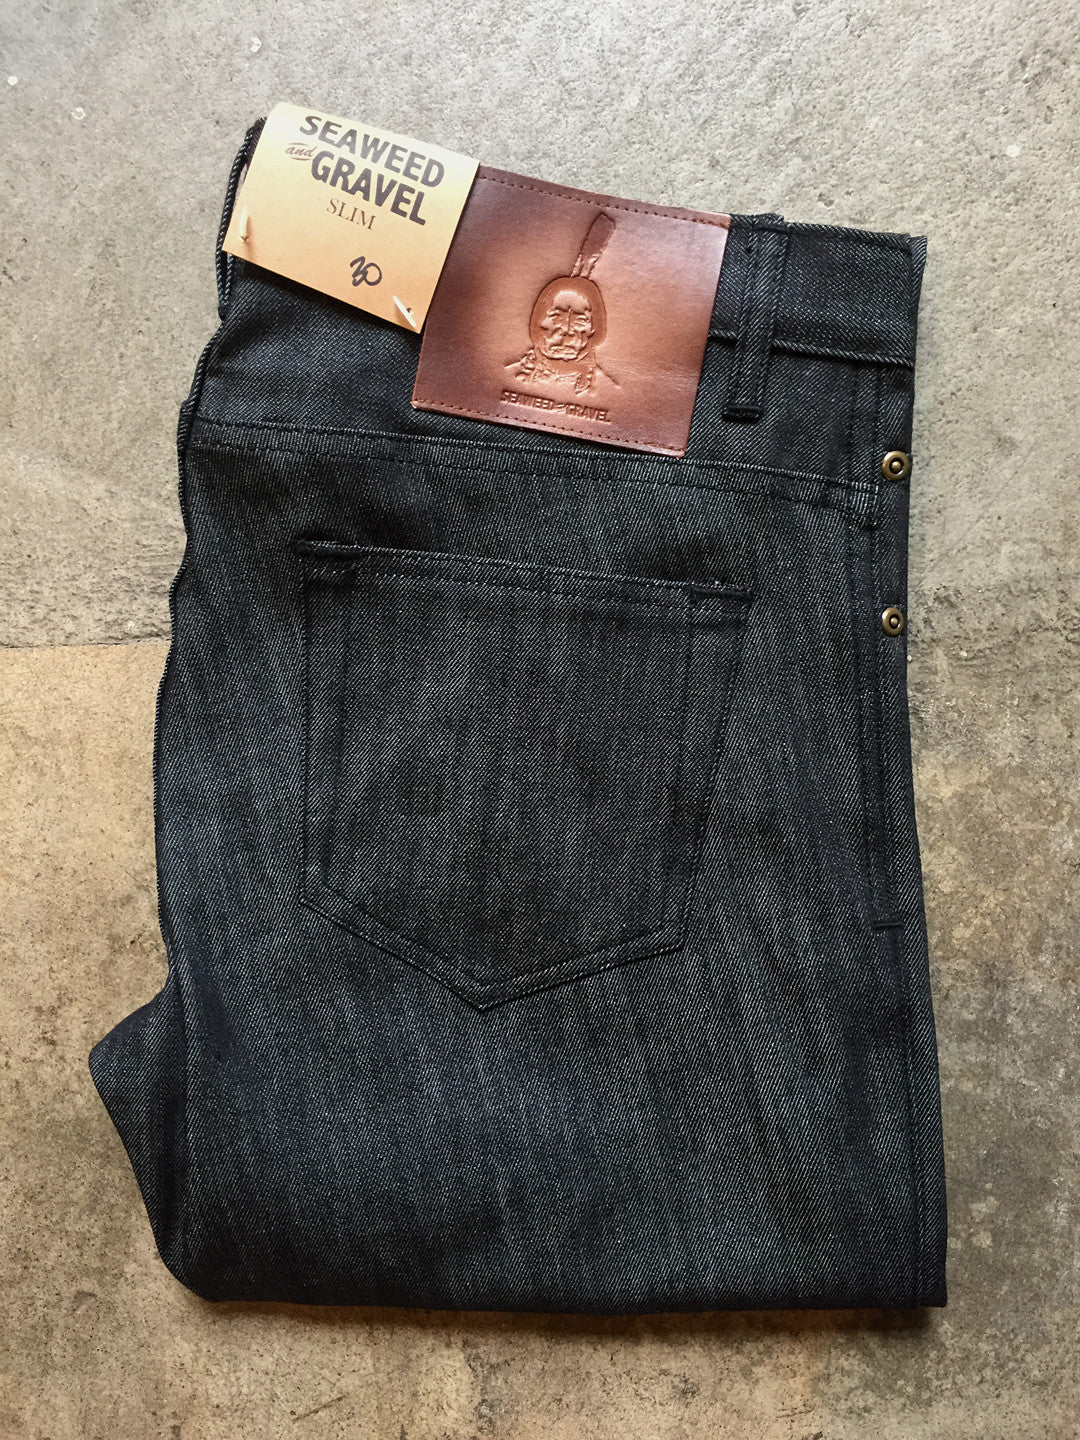 Denim S&G Mens Slim Jeans Black take 30% Off Price